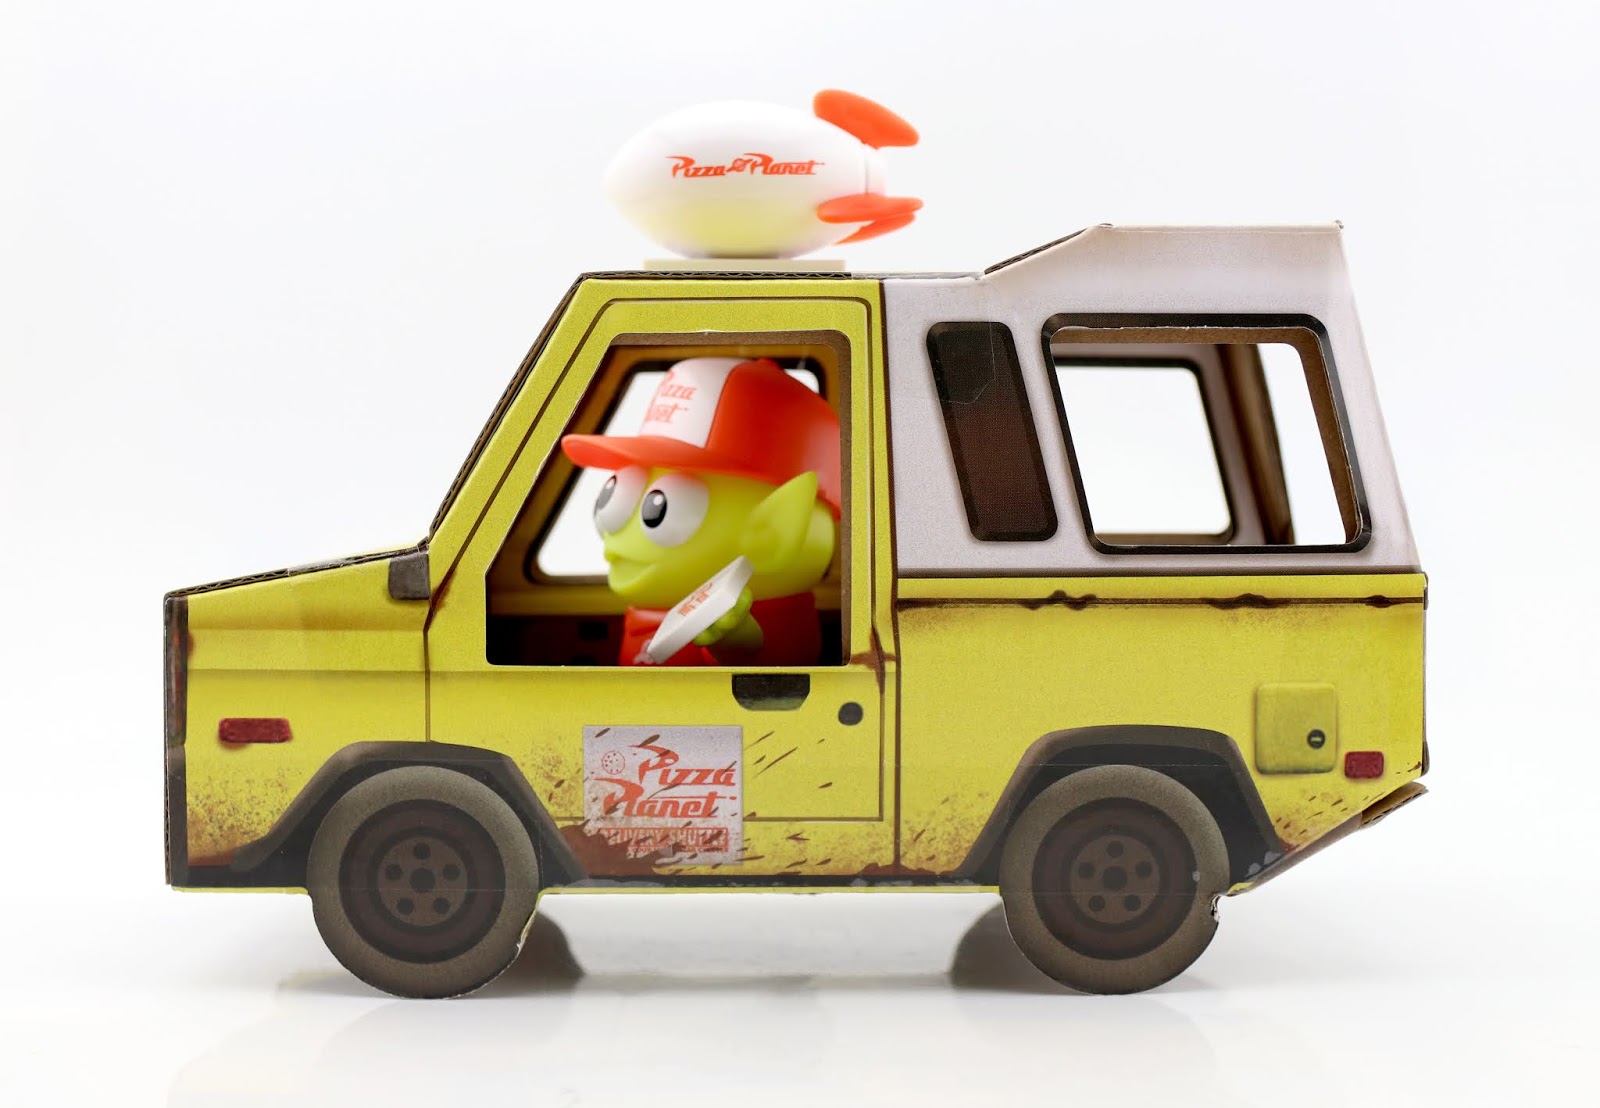 Toy Story Mattel Pixar Alien Remix Pizza Planet Truck Driver Comic-Con 2020 Exclusive